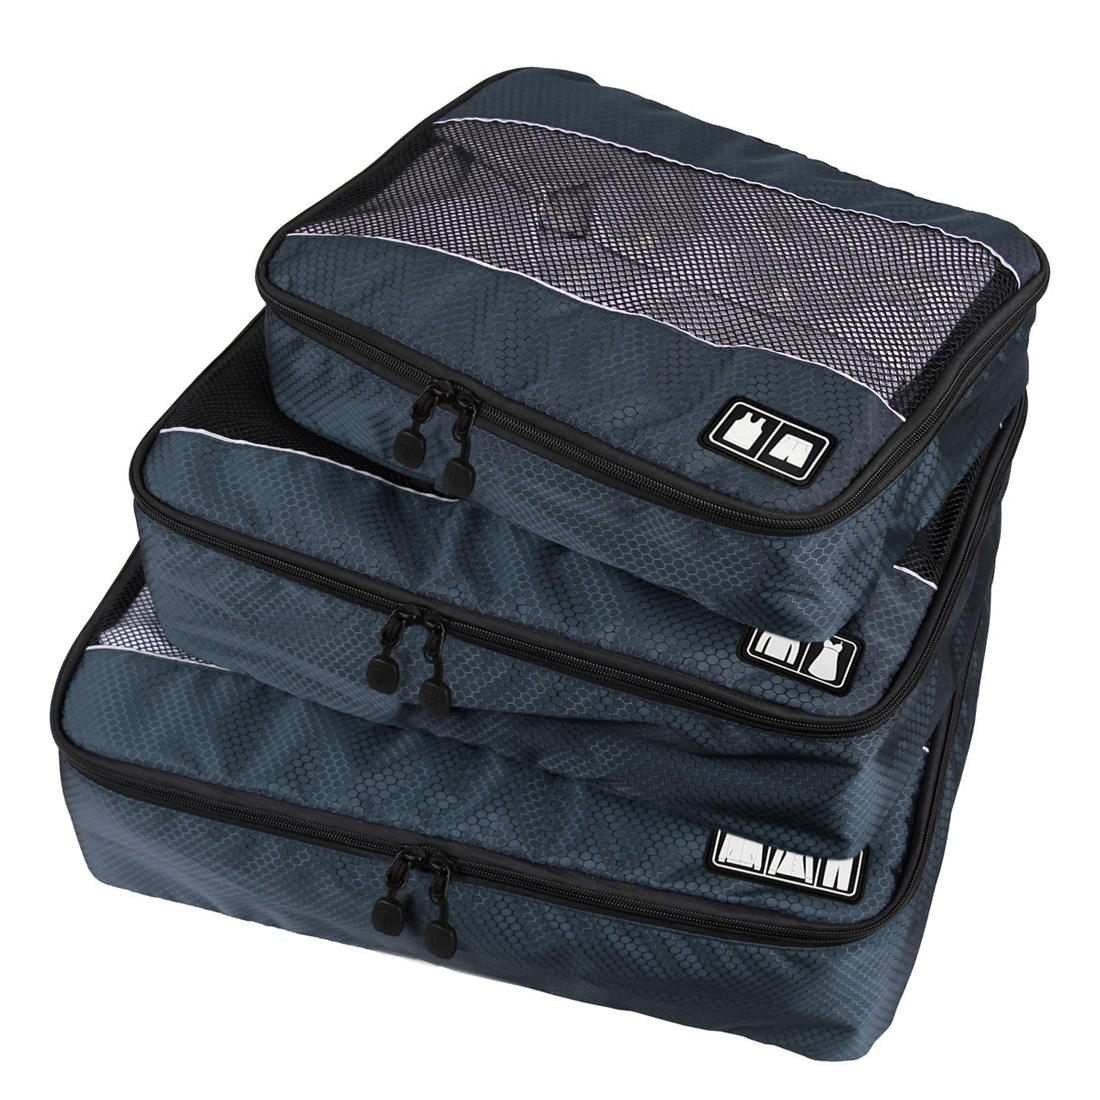 Waterproof Toiletries Travel Storage Set Bag Product Details